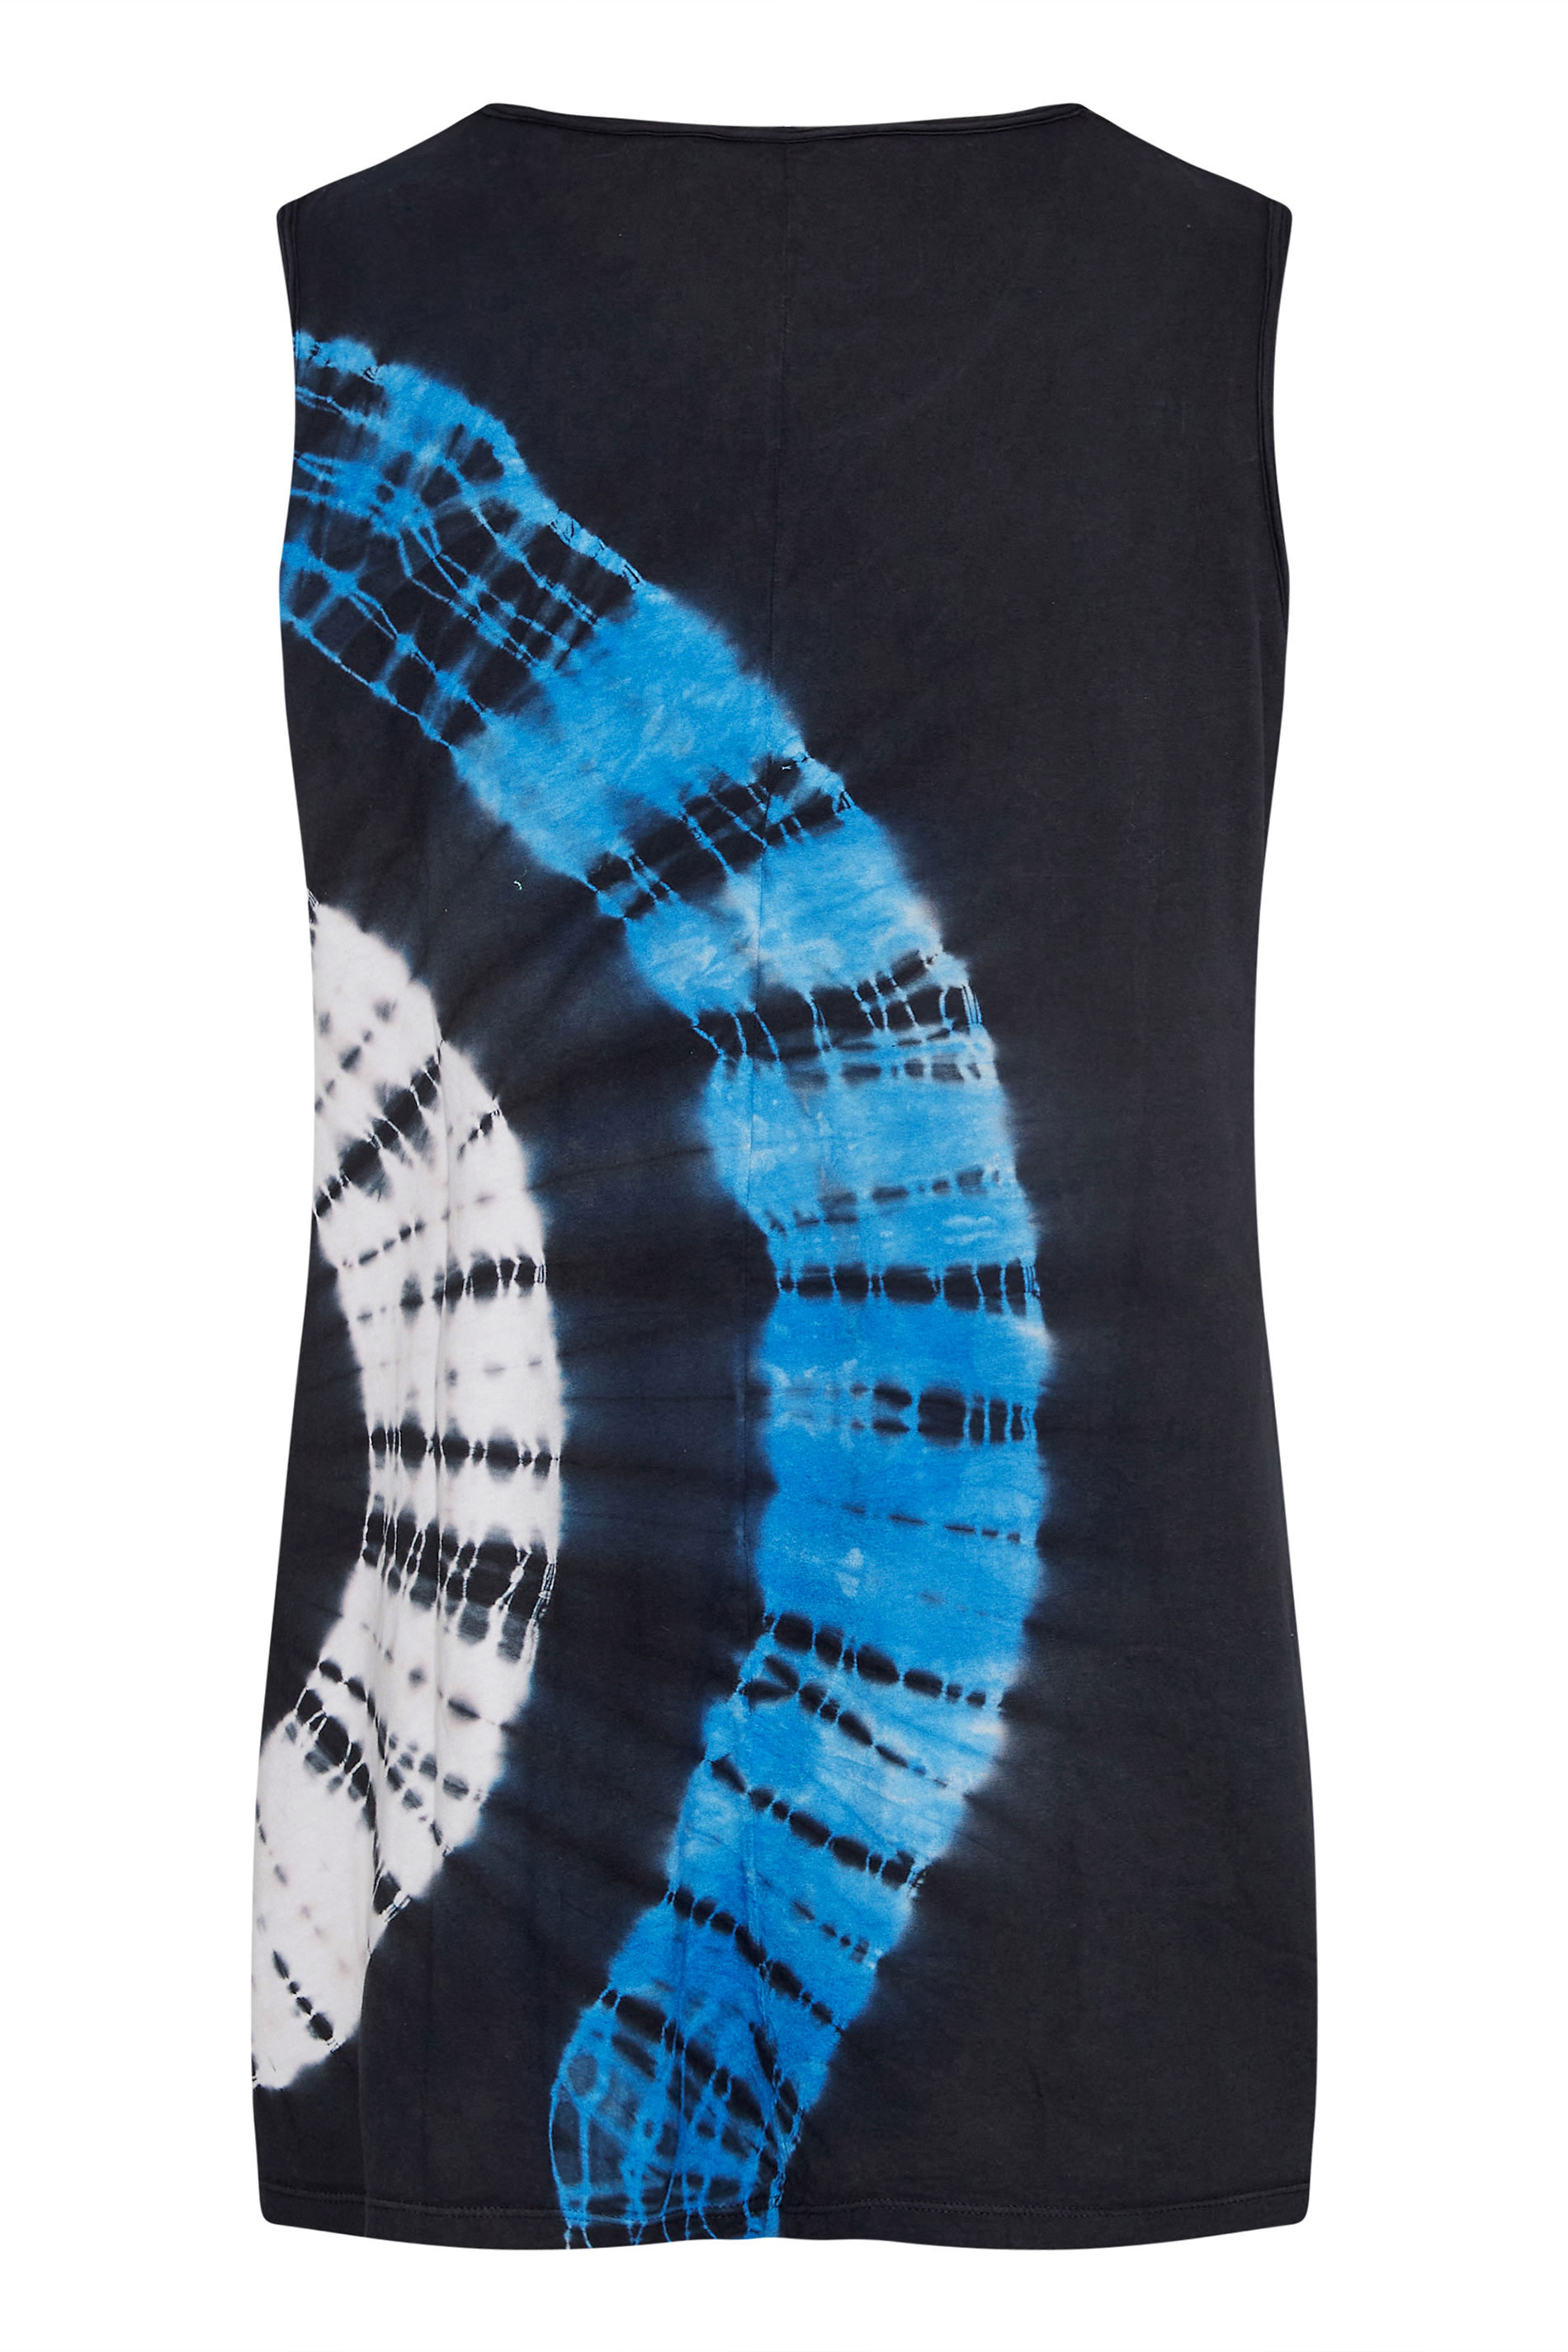 Grande taille  Tops Grande taille  Tops Jersey | Débardeur Noir et Bleu Long Tie & Dye Cercle - DF84877